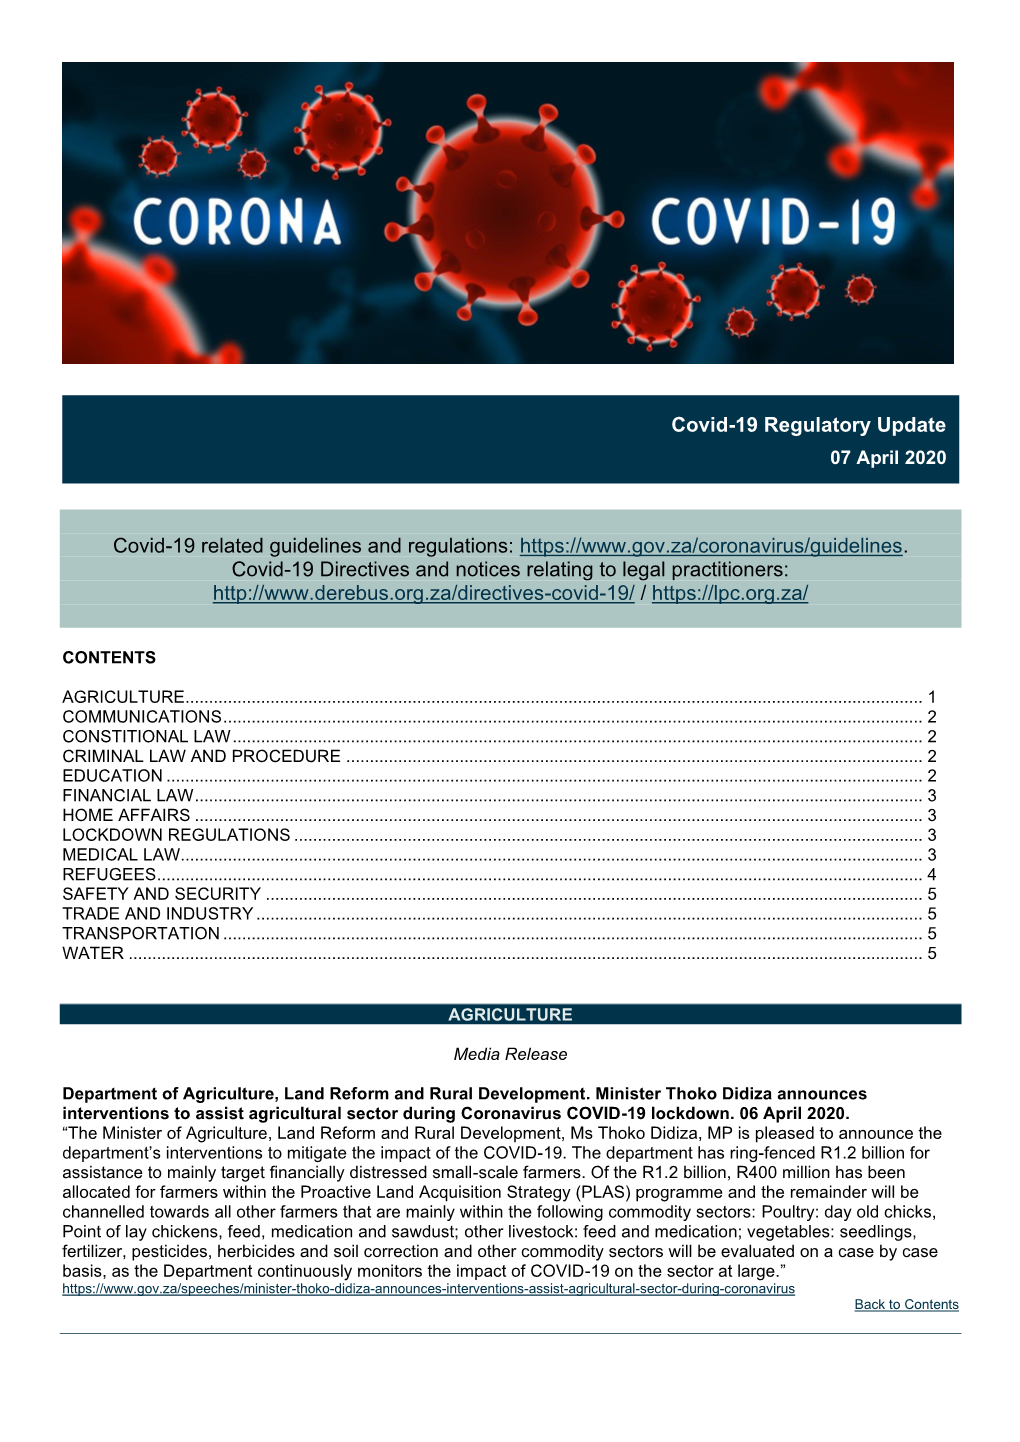 Covid-19 Regulatory Update 07Apr2020